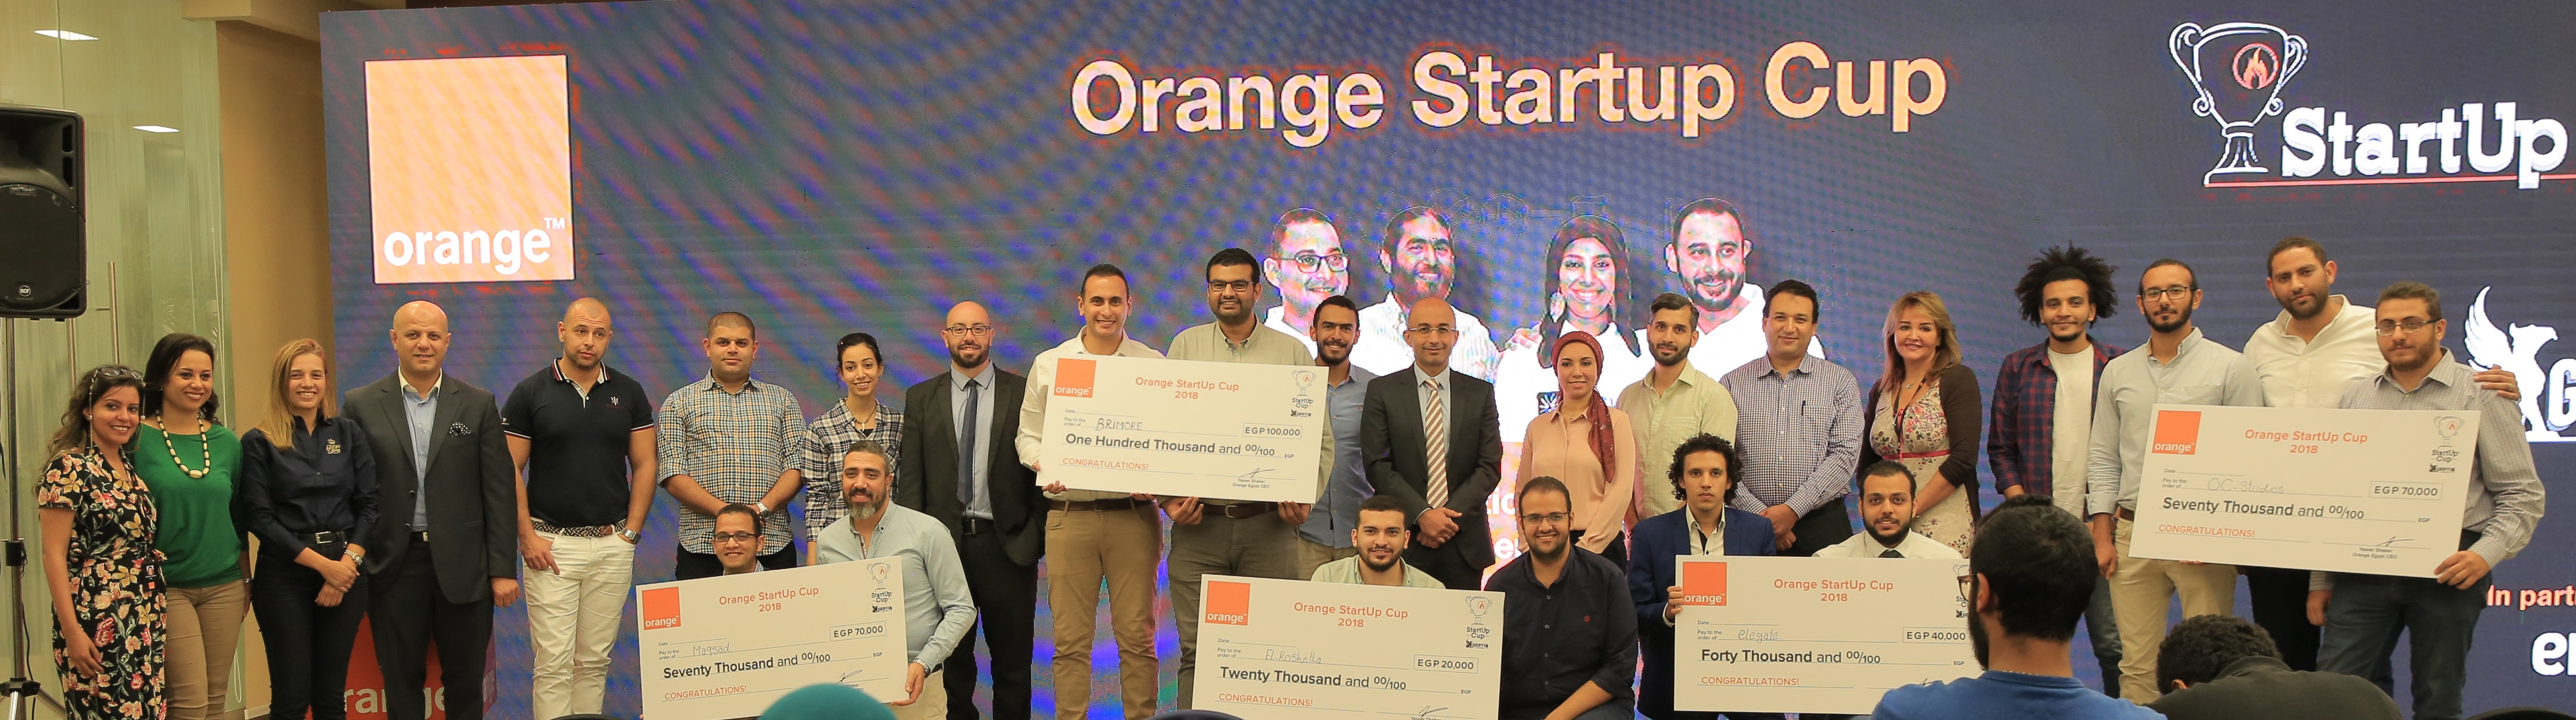 صورة تذكارية للفائزين بمسابقة كأس اورنج للشركات الناشئة مع المهندس ياسر شاكر الرئيس التنفيذي لأورنج مصر